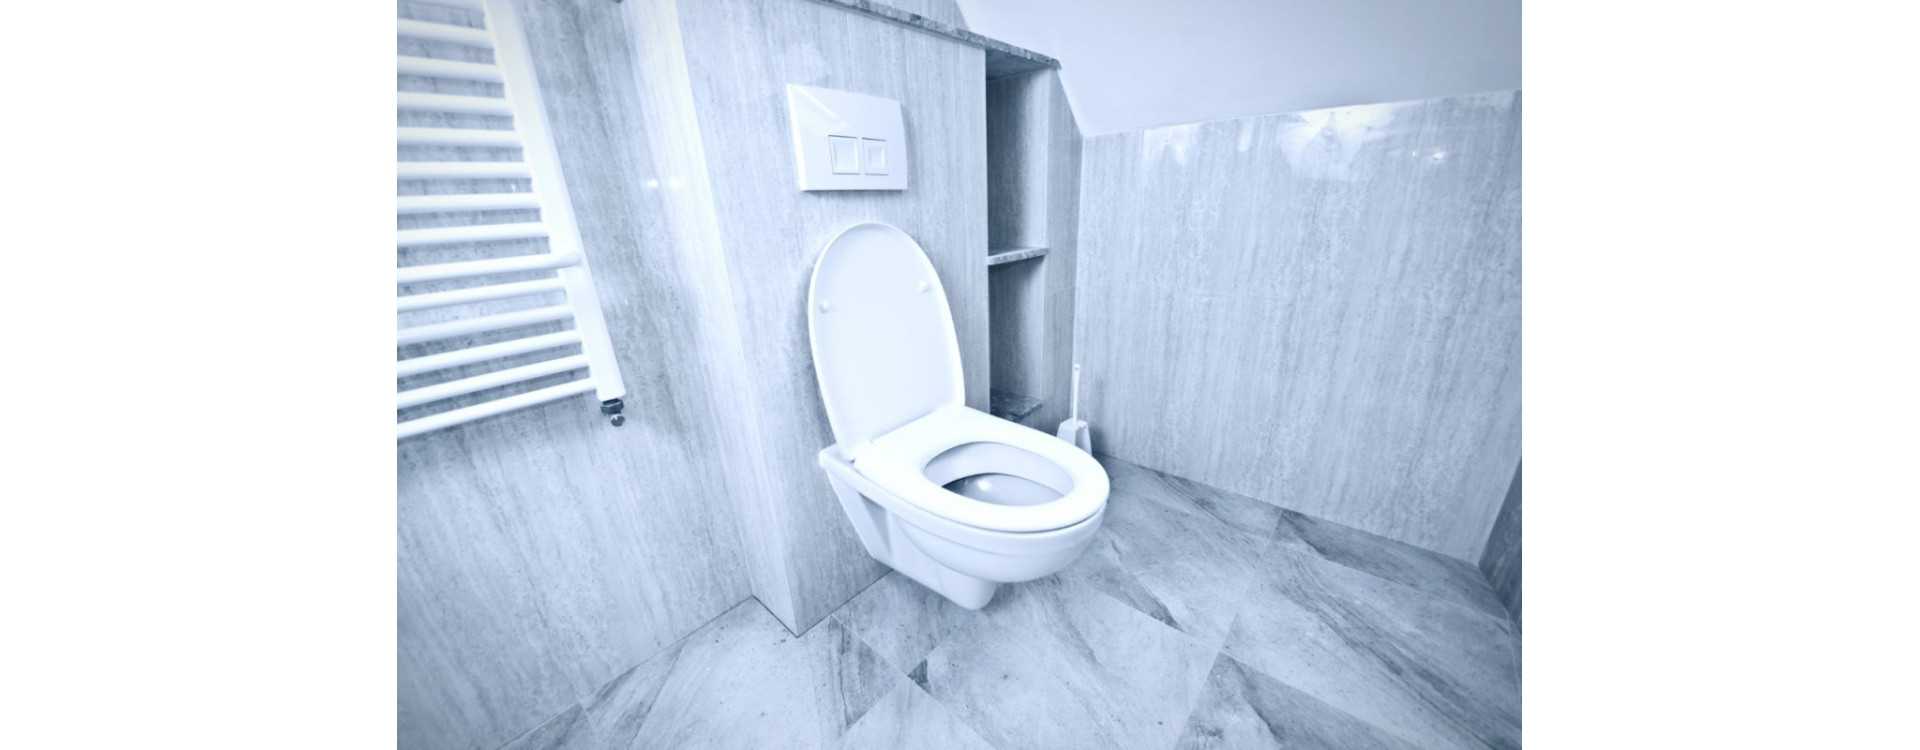 Domowe sposoby na zatkaną toaletę. Sprawdzone sposoby jak odetkać toaletę.